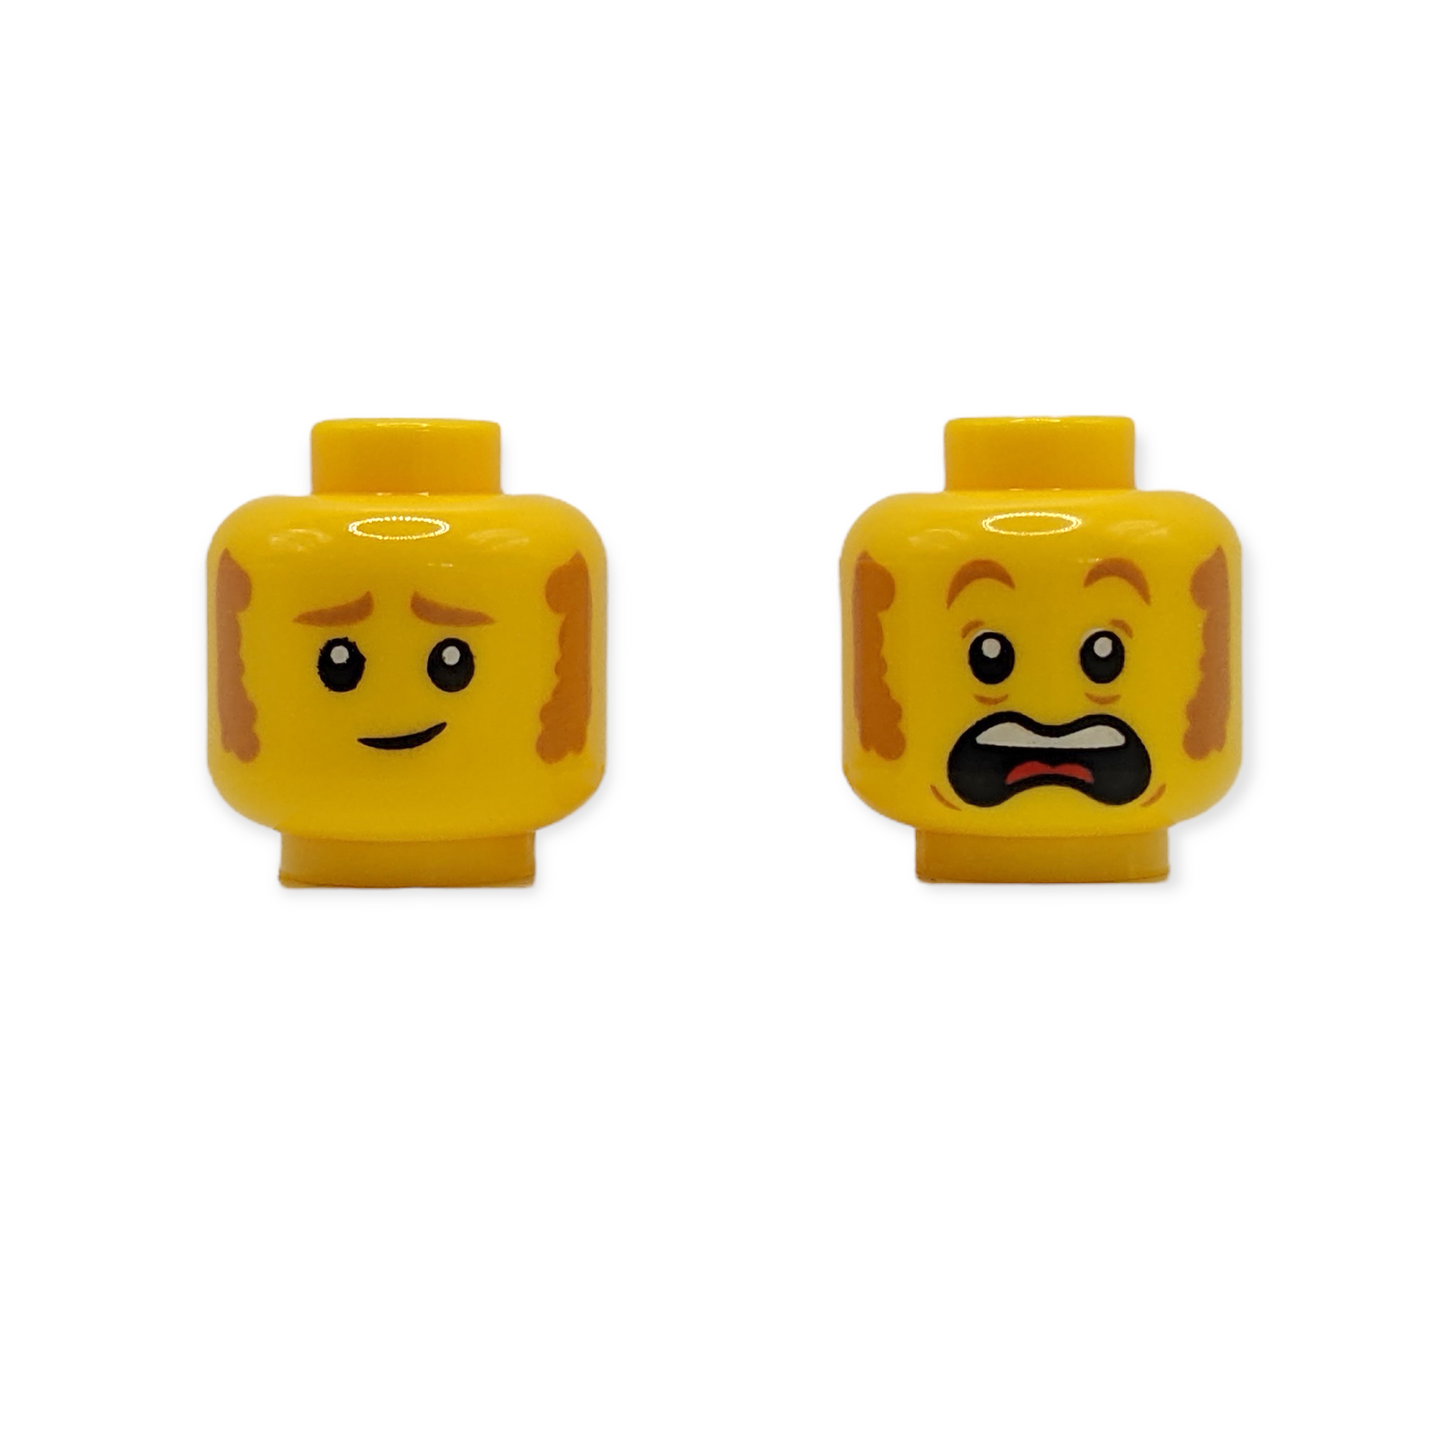 LEGO Head - 3540 Dual Sided Medium Nougat Eyebrows